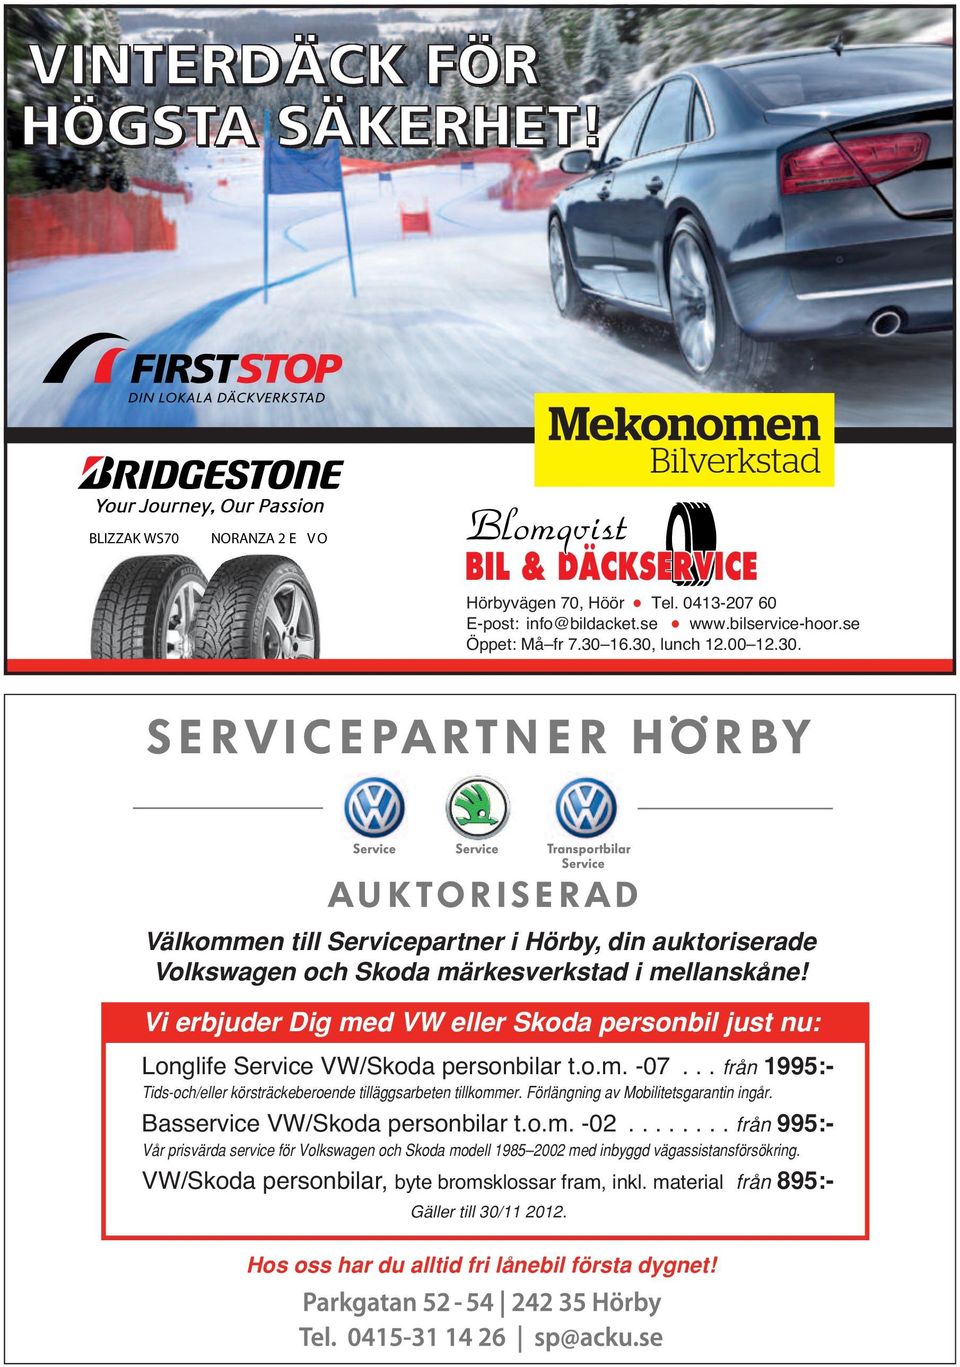 Vi erbjuder Dig med VW eller Skoda personbil just nu: Longlife Service VW/Skoda personbilar t.o.m. -07... från 1995:- Tids-och/eller körsträckeberoende tilläggsarbeten tillkommer.